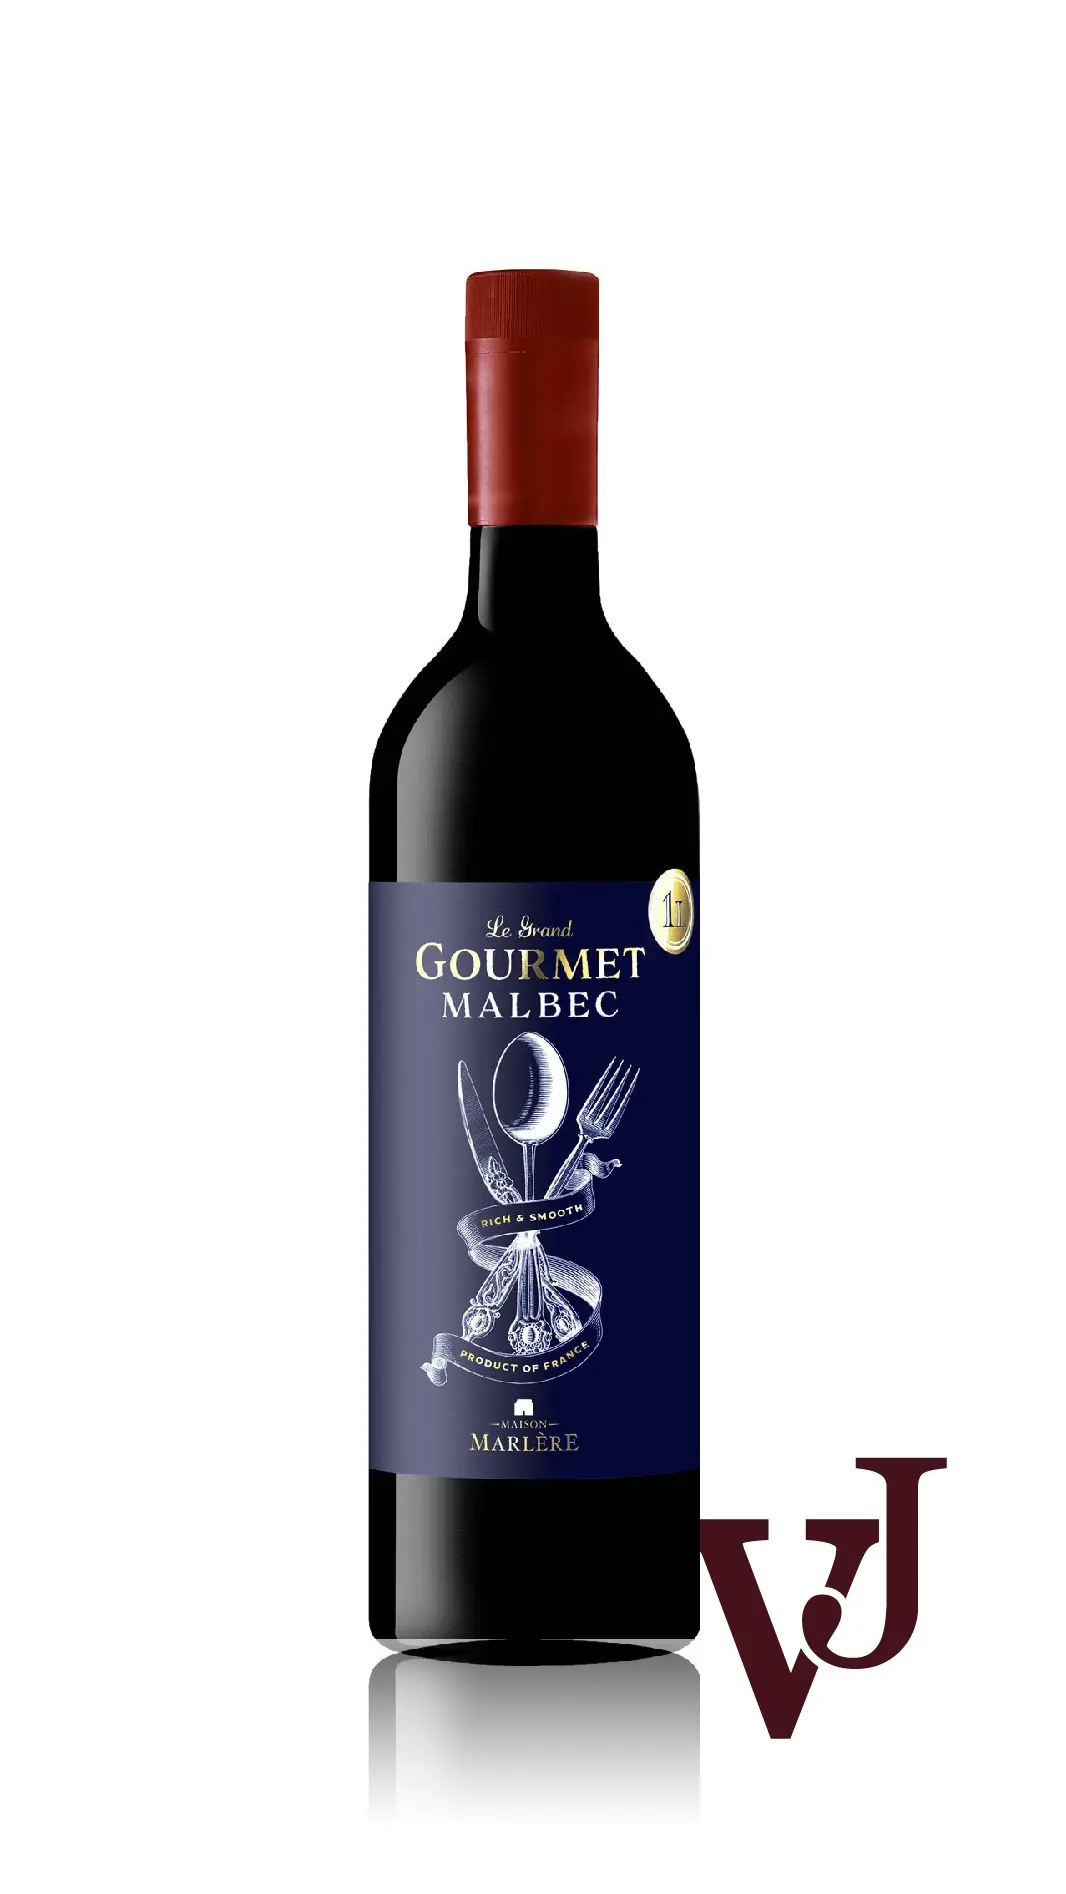 Rött Vin - Le Grand Gourmet Malbec 2022 artikel nummer 659001 från producenten Maison Marlère från Chile - Vinjournalen.se